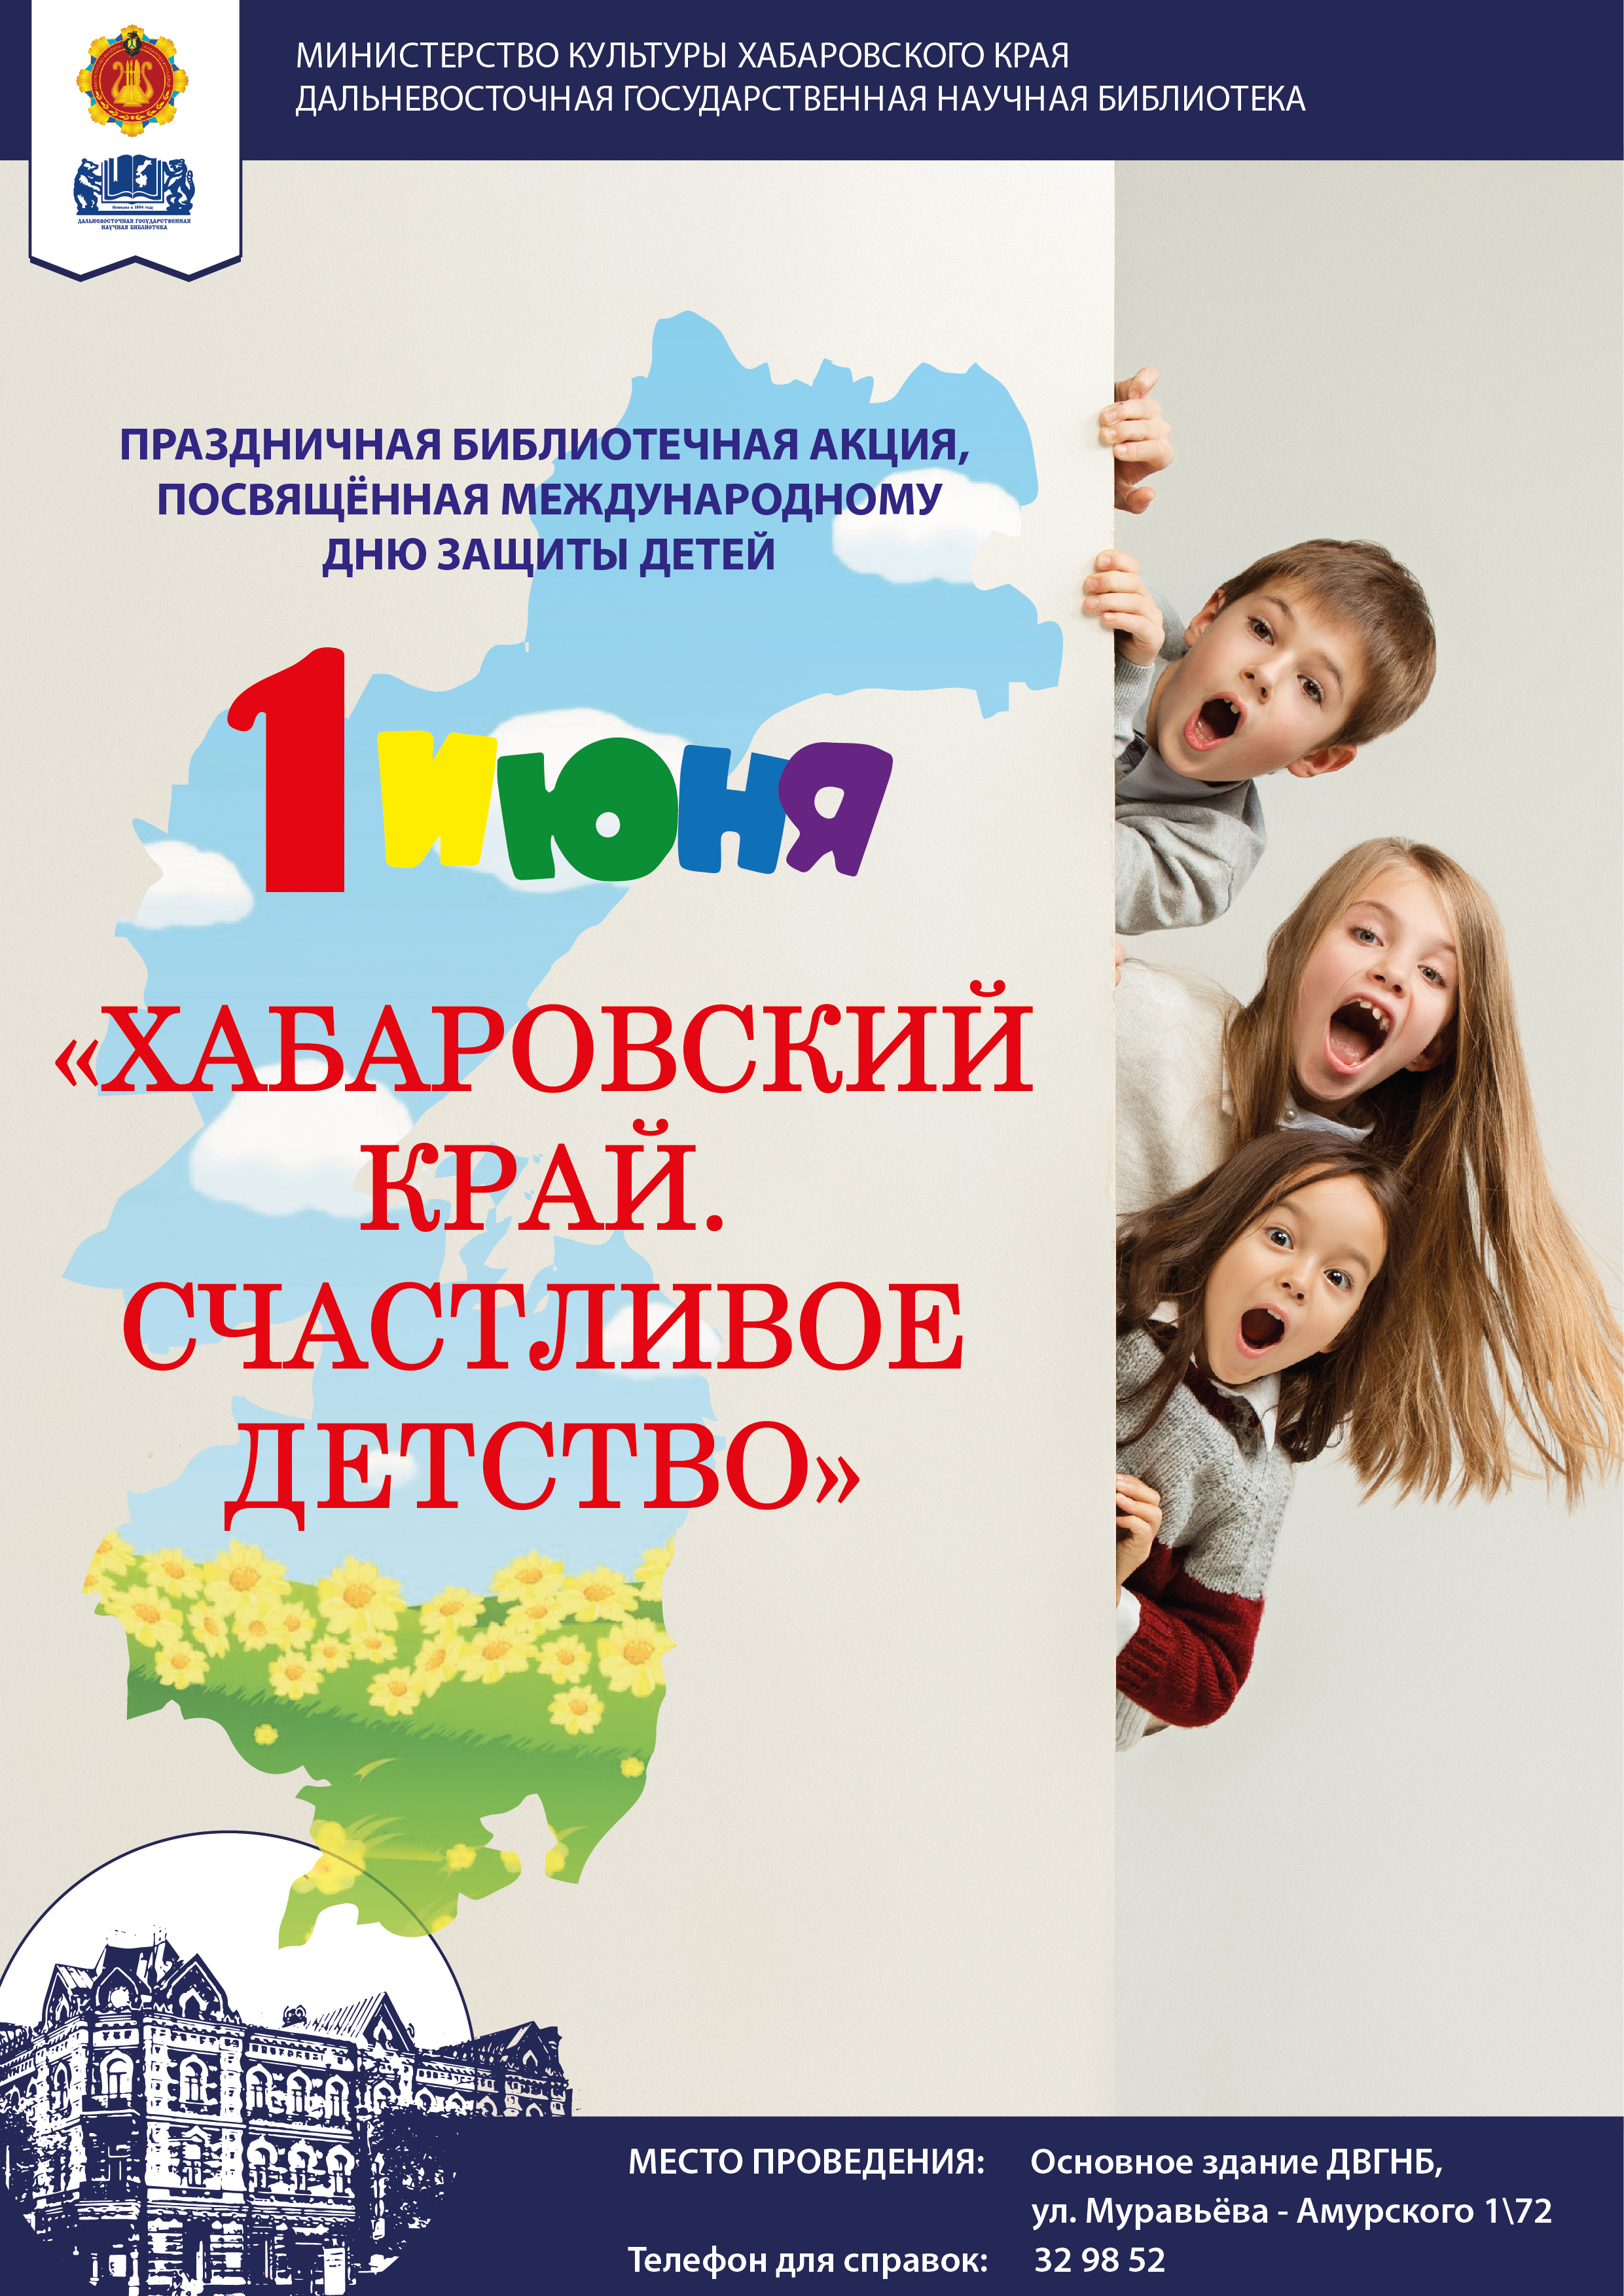 Библиотека представляет праздничную программу «Хабаровский край. Счастливое детство».